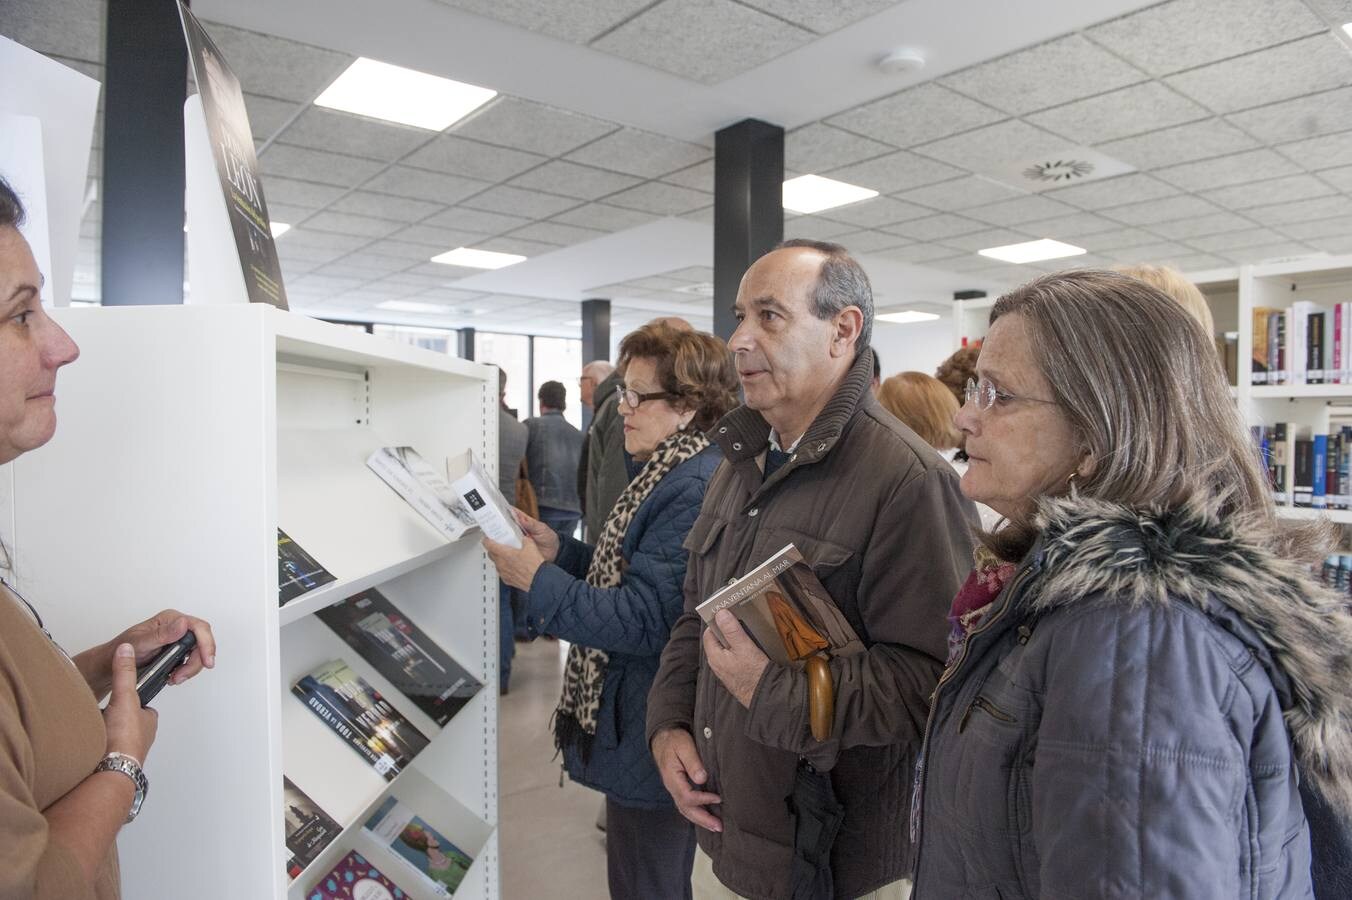 Fotos: La biblioteca de Cazoña abre con 2.500 libros en las estanterías